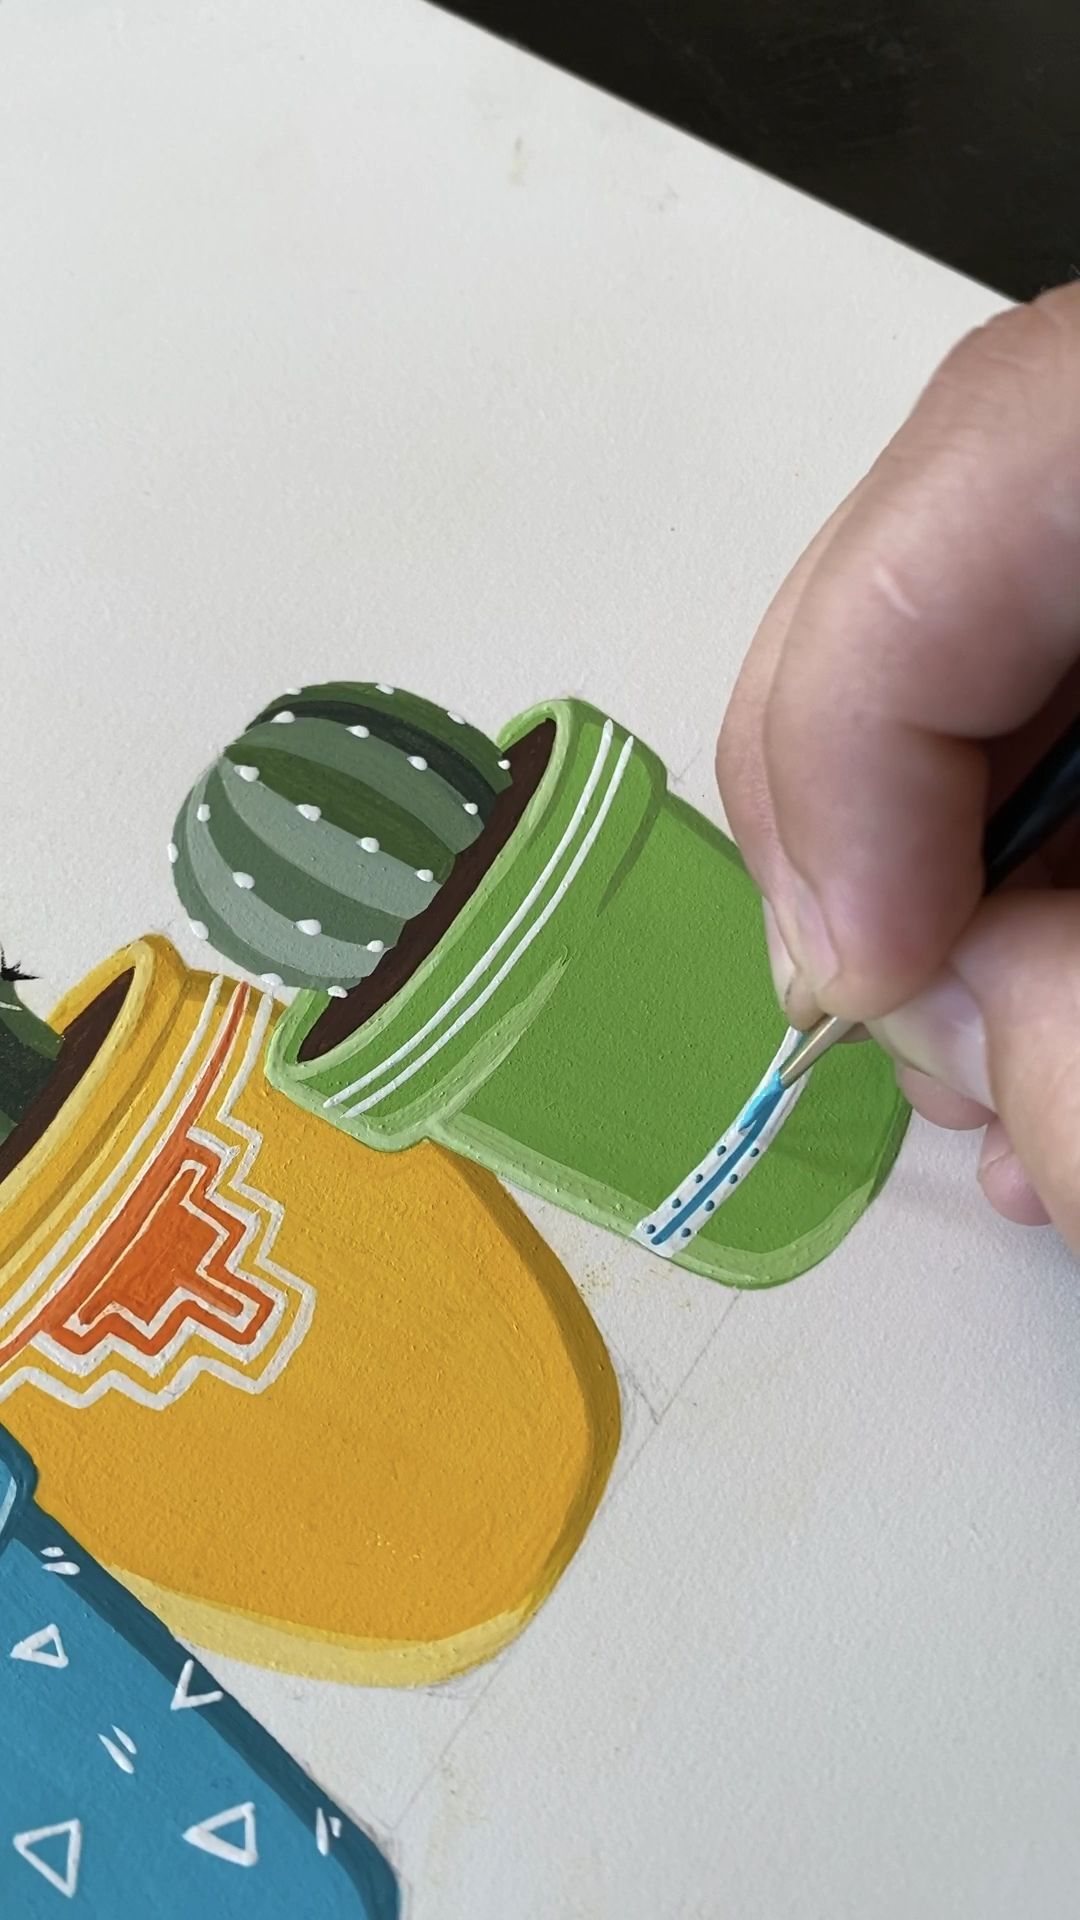 Barrel Cacti Gouache Painting by Philip Boelter -   11 plants Art sketch ideas